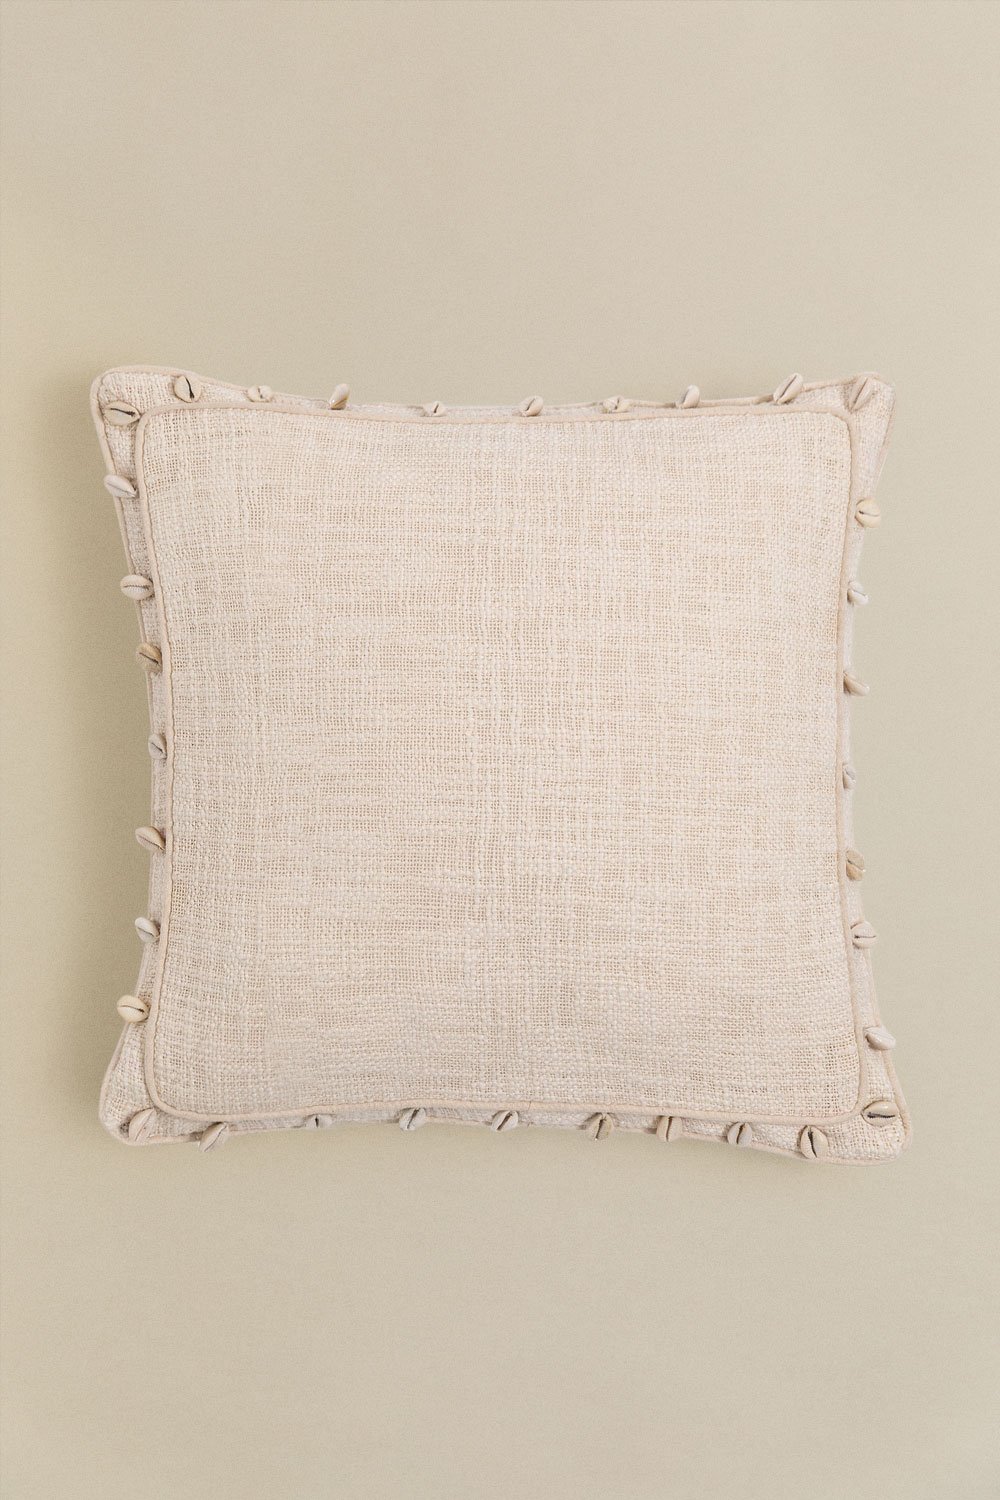 Kwadratowa poduszka z bawełny (45x45 cm) Agibe, obrazek w galerii 1